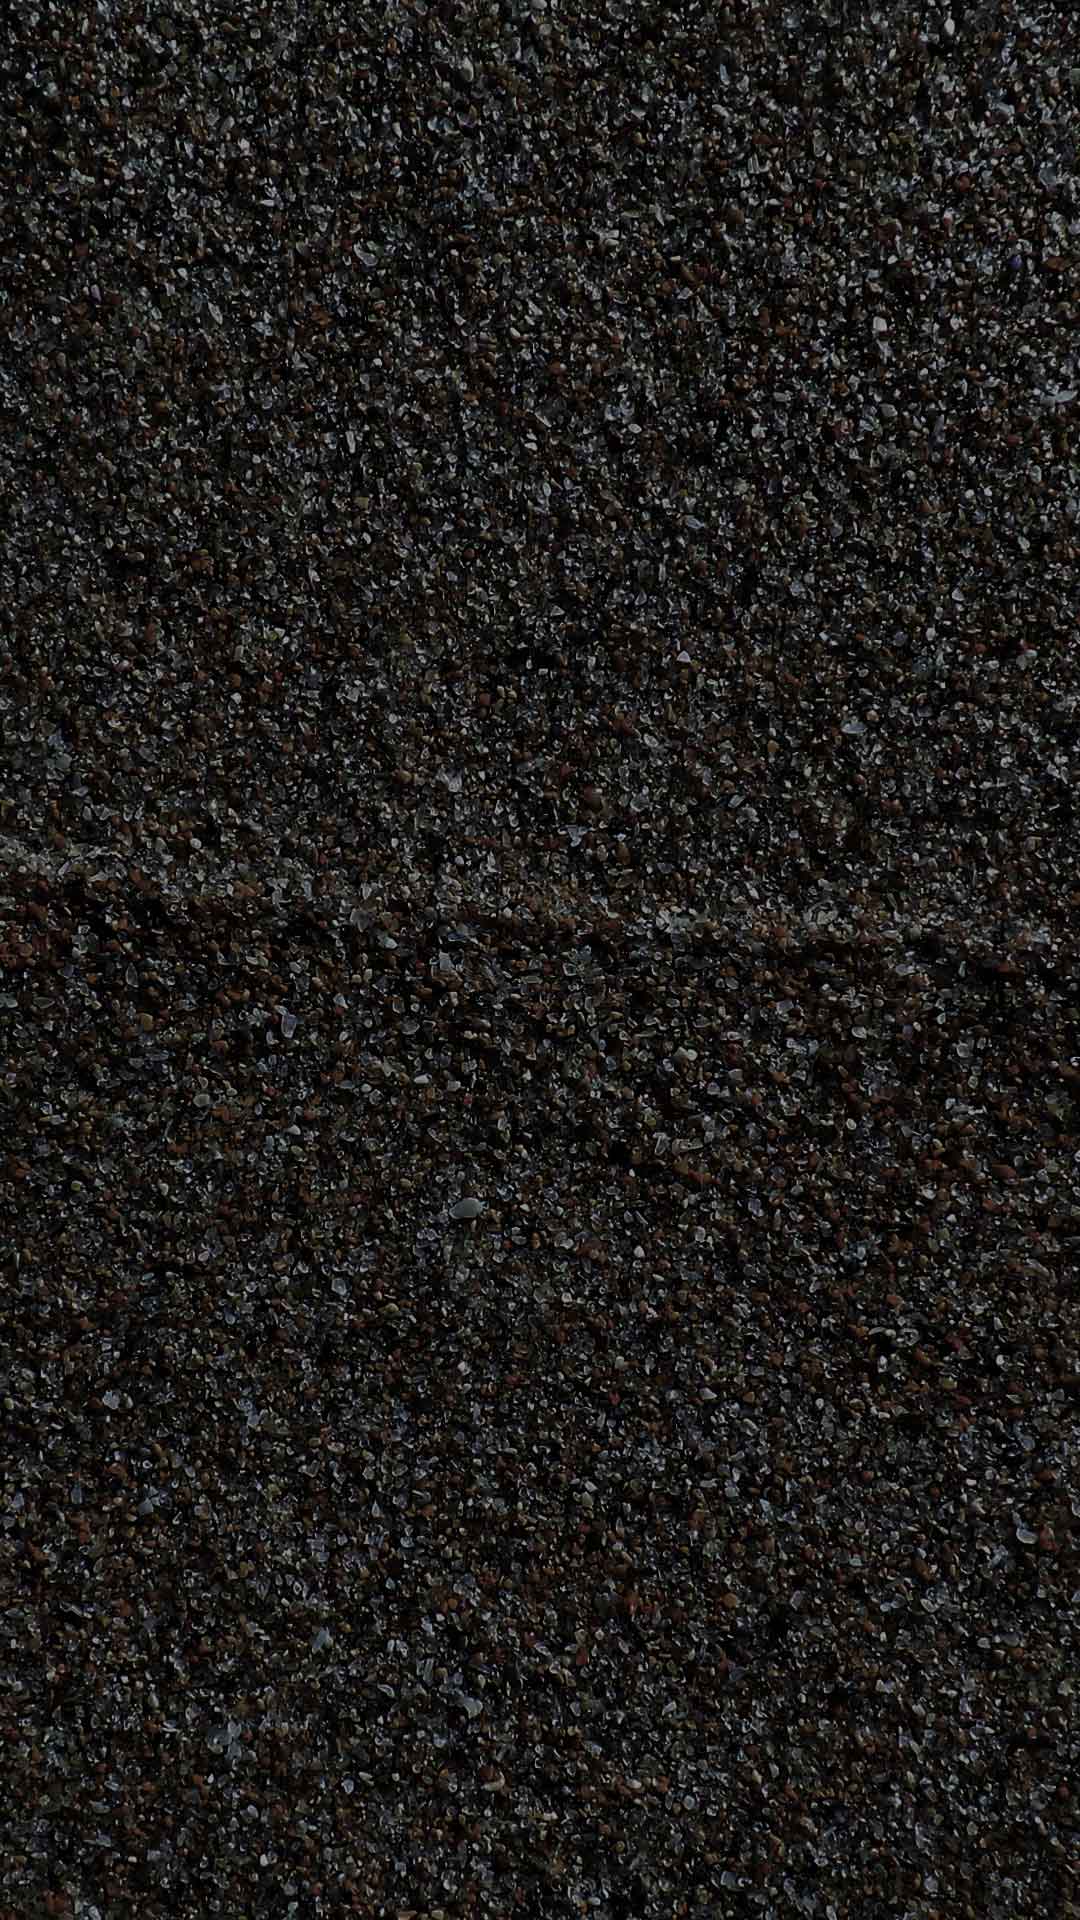 dark black sand wallpaper texture